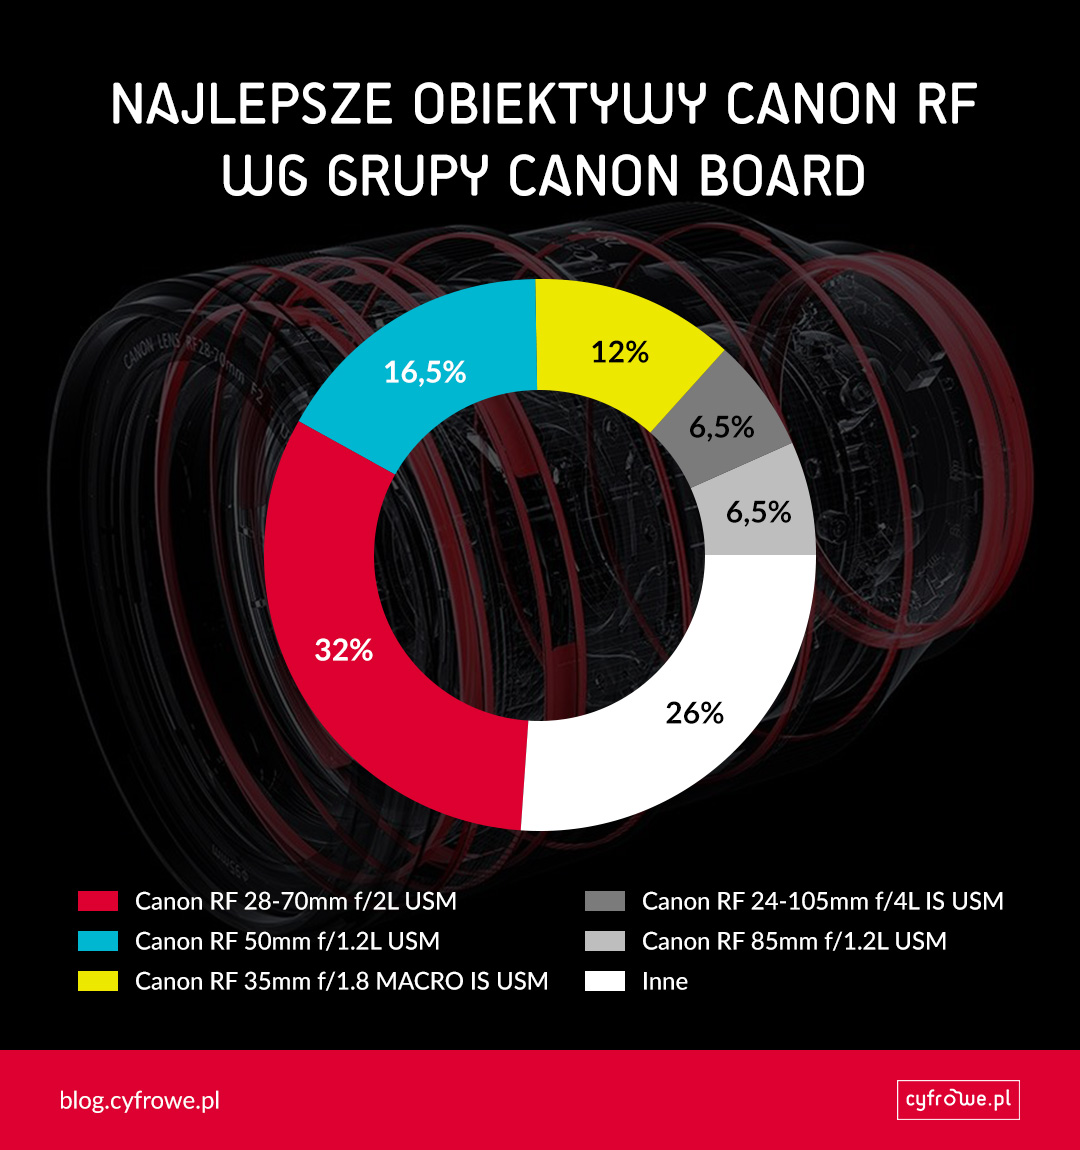 Najlepsze obiektywy Canon RF wg grupy Canon Board